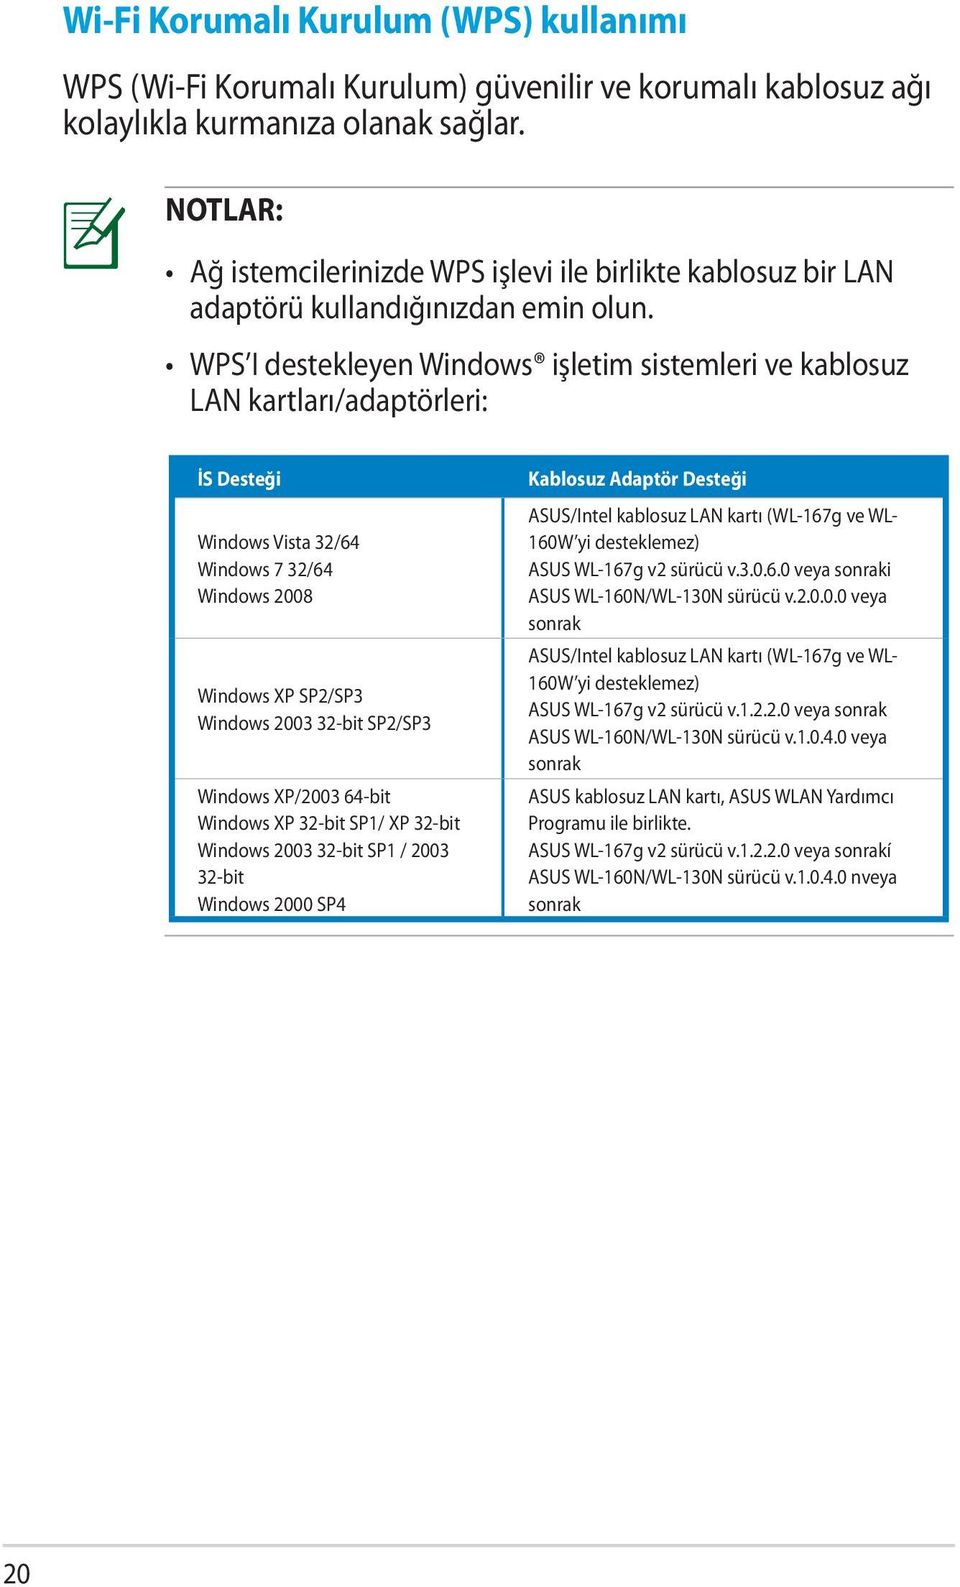 WPS I destekleyen Windows işletim sistemleri ve kablosuz LAN kartları/adaptörleri: İS Desteği Windows Vista 32/64 Windows 7 32/64 Windows 2008 Windows XP SP2/SP3 Windows 2003 32-bit SP2/SP3 Windows